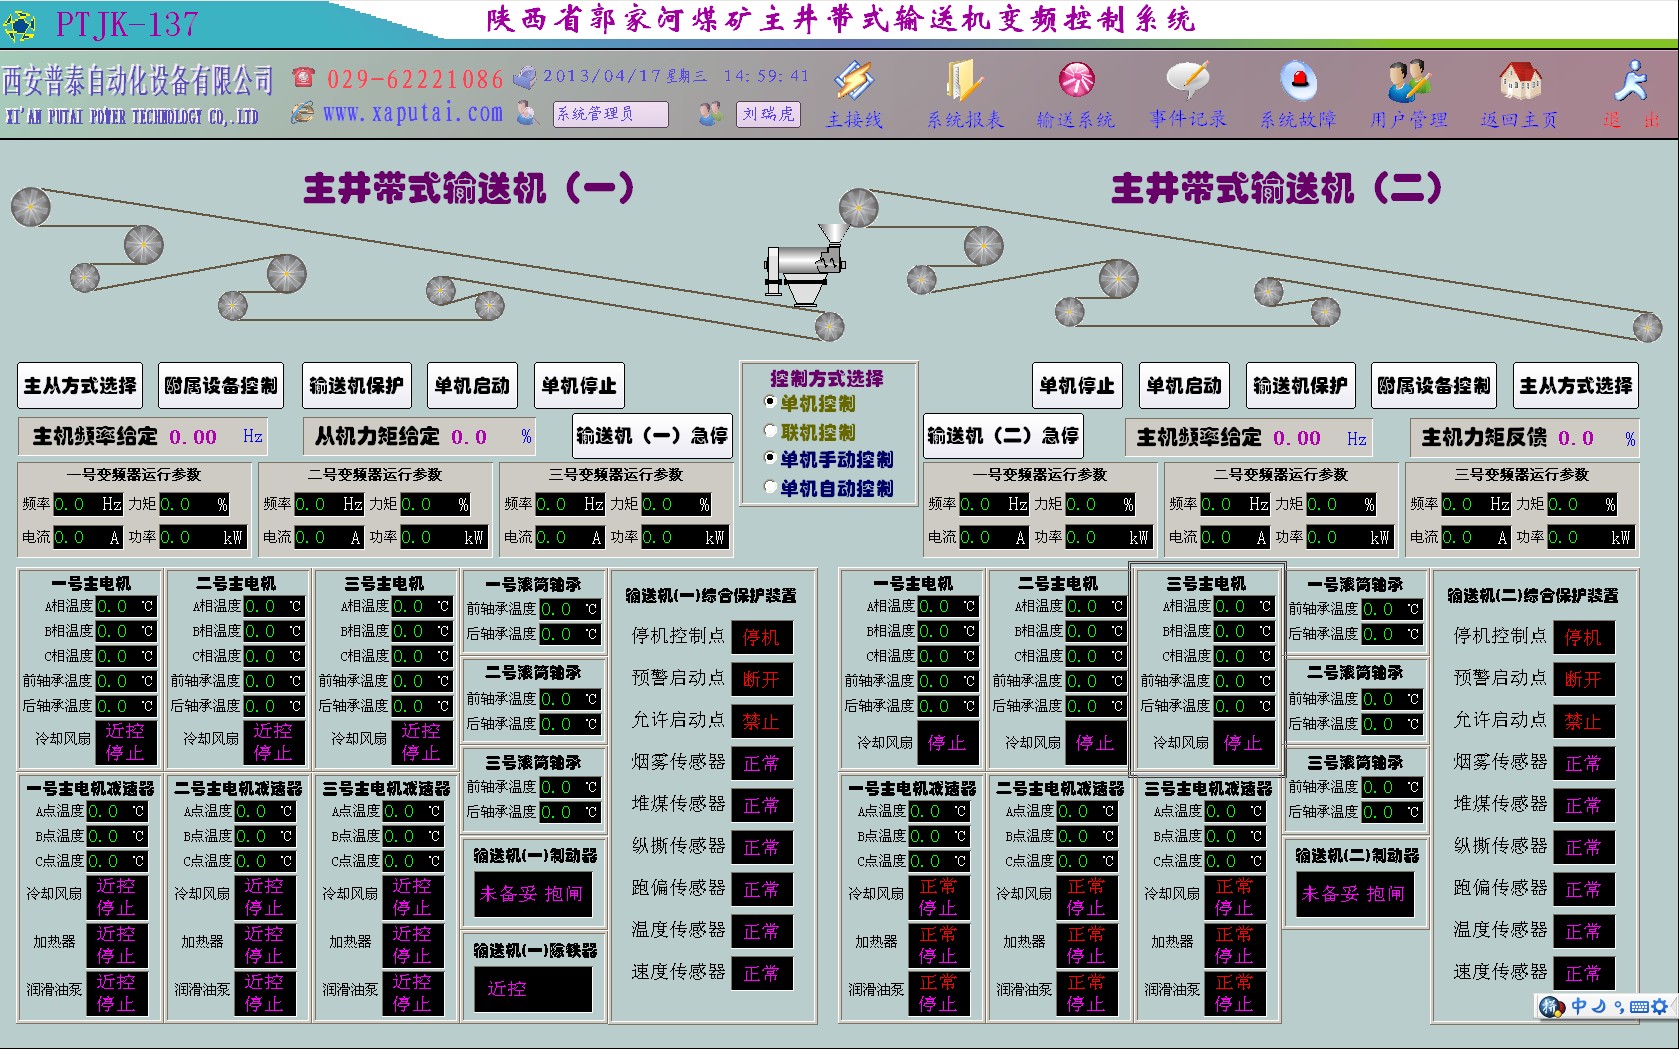 陕西郭家河煤业有限责任公司主井带式输送机变频监控系统